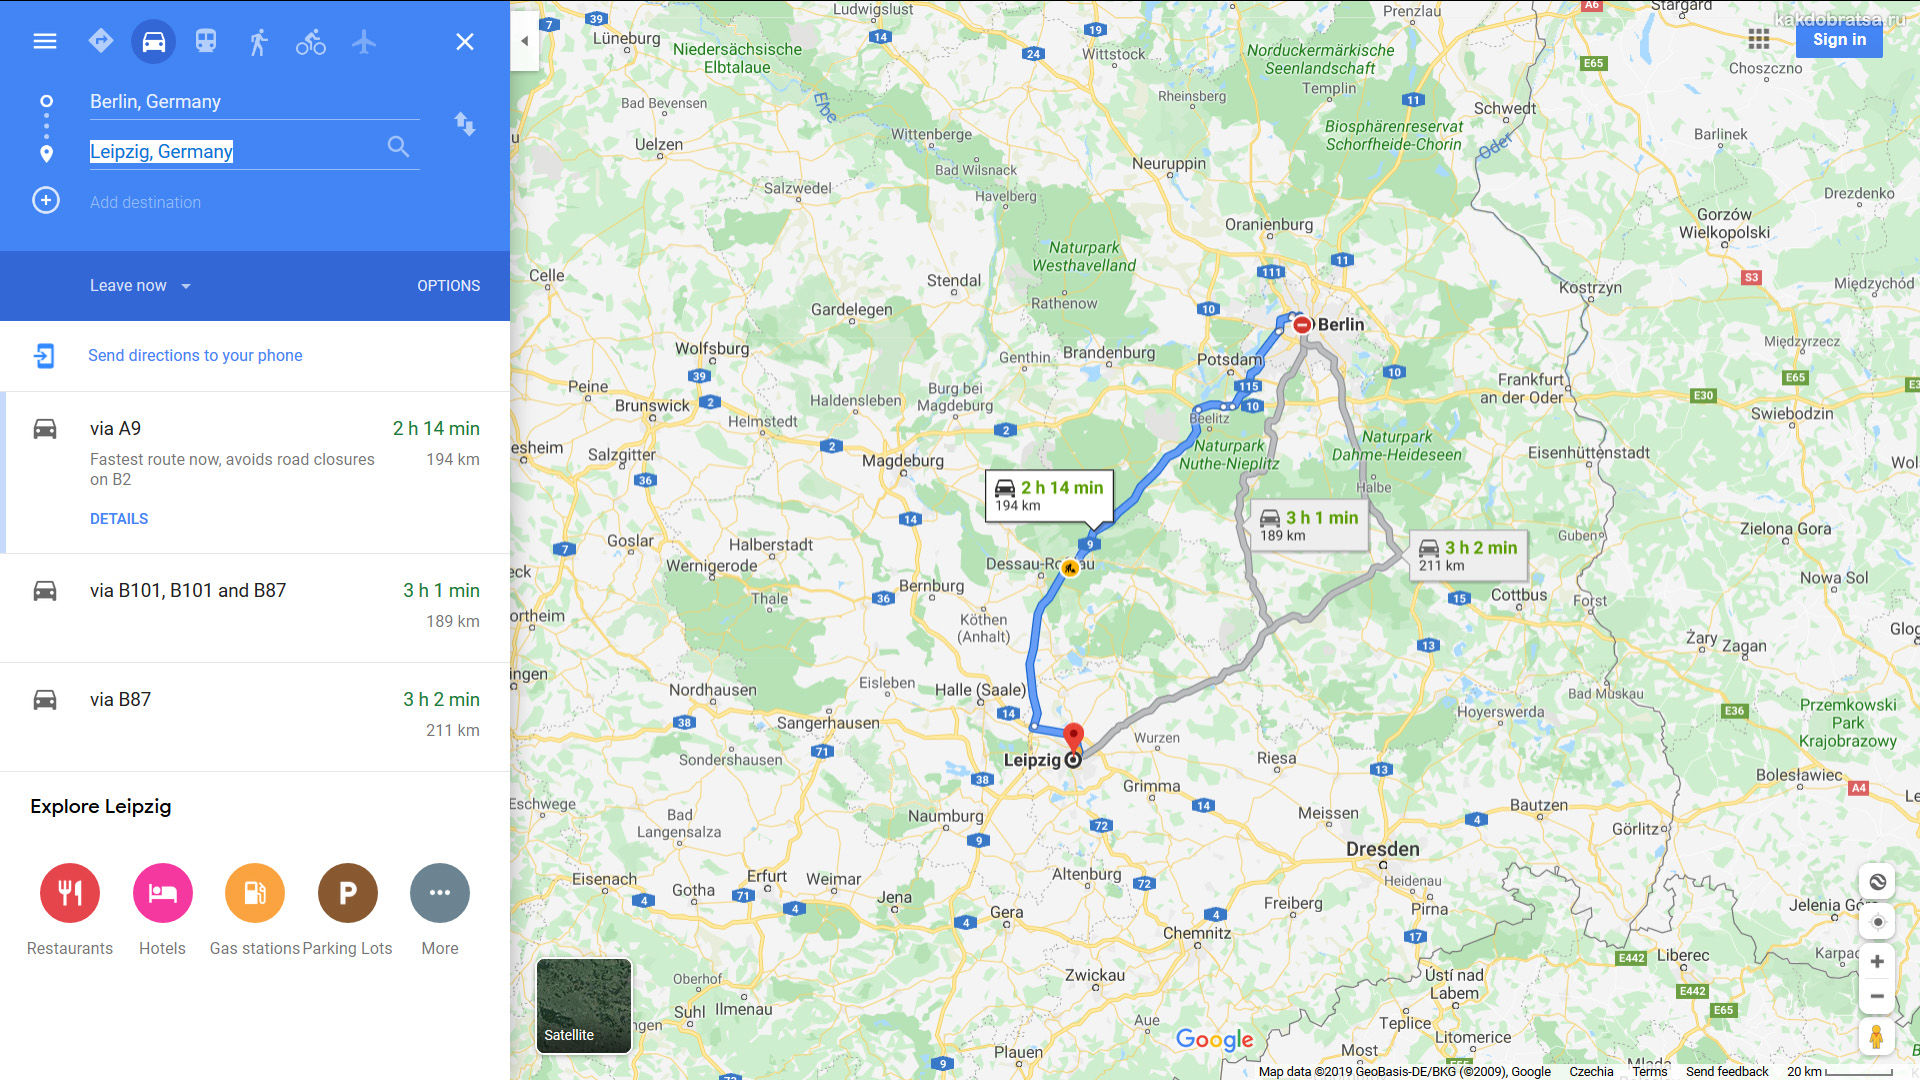 Мюнхен - берлин: как добраться, какое расстояние?